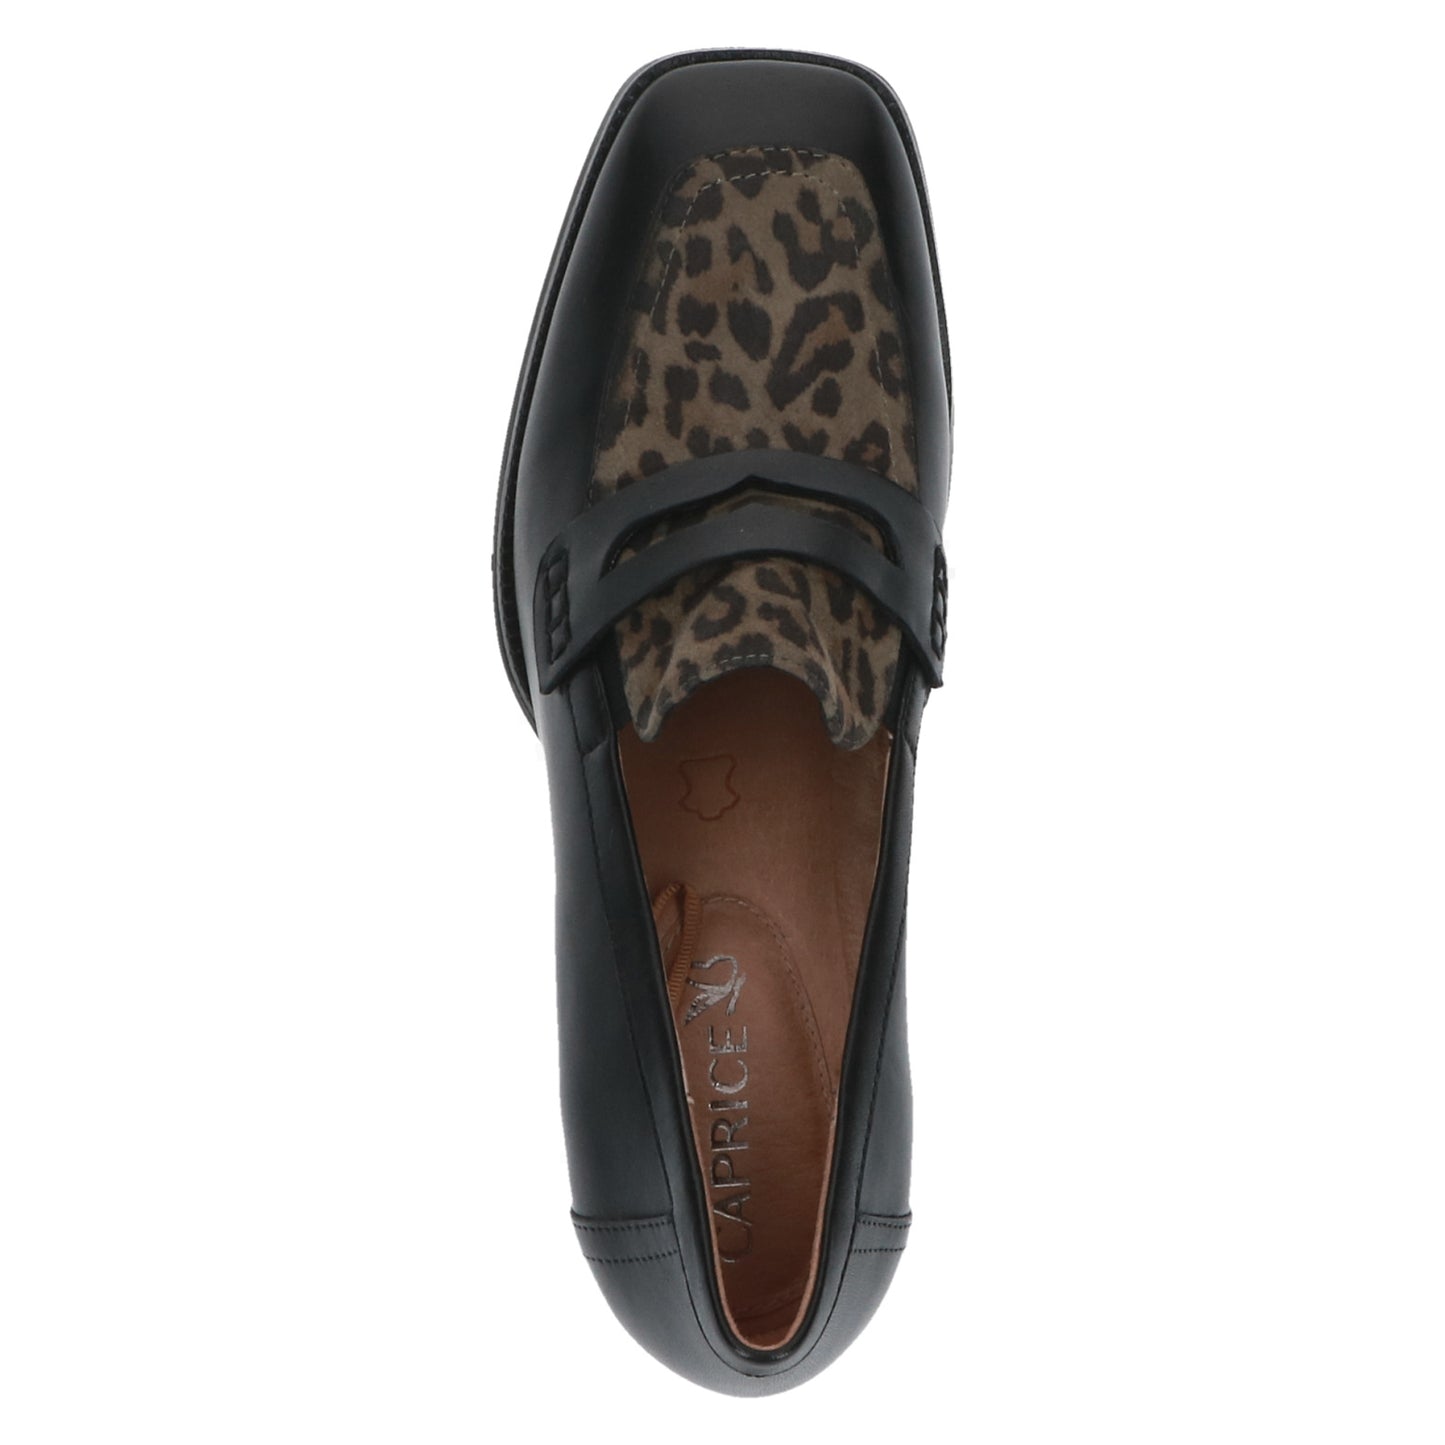 Caprice Black Leopard Print Heeled Loafer.